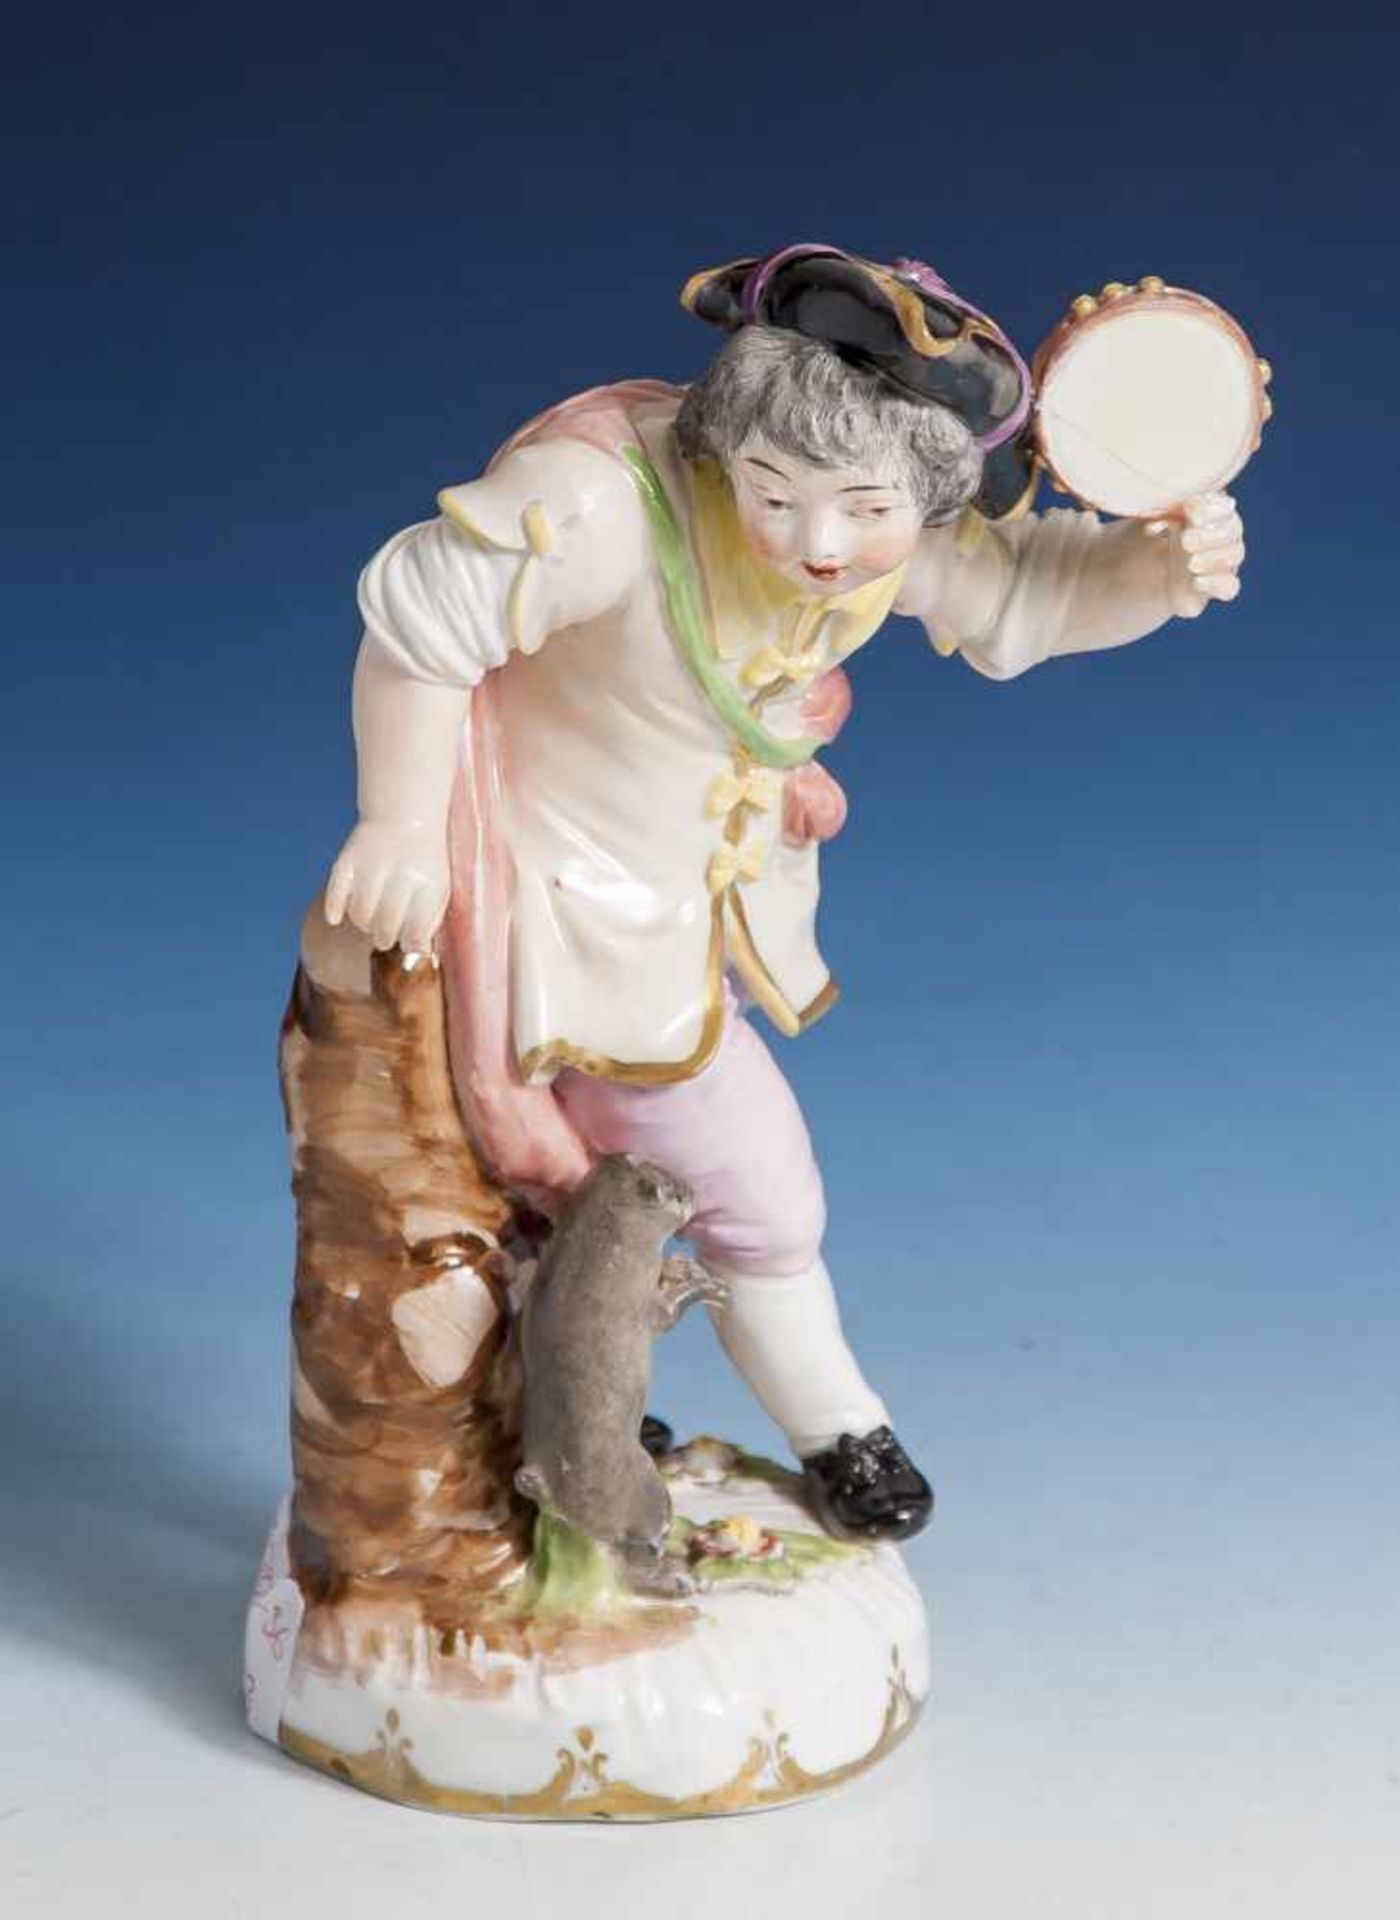 Tamburinspieler mit Mops, Wiener Porzellanmanufaktur, Ende 18. Jahrhundert,unterglasurblaue